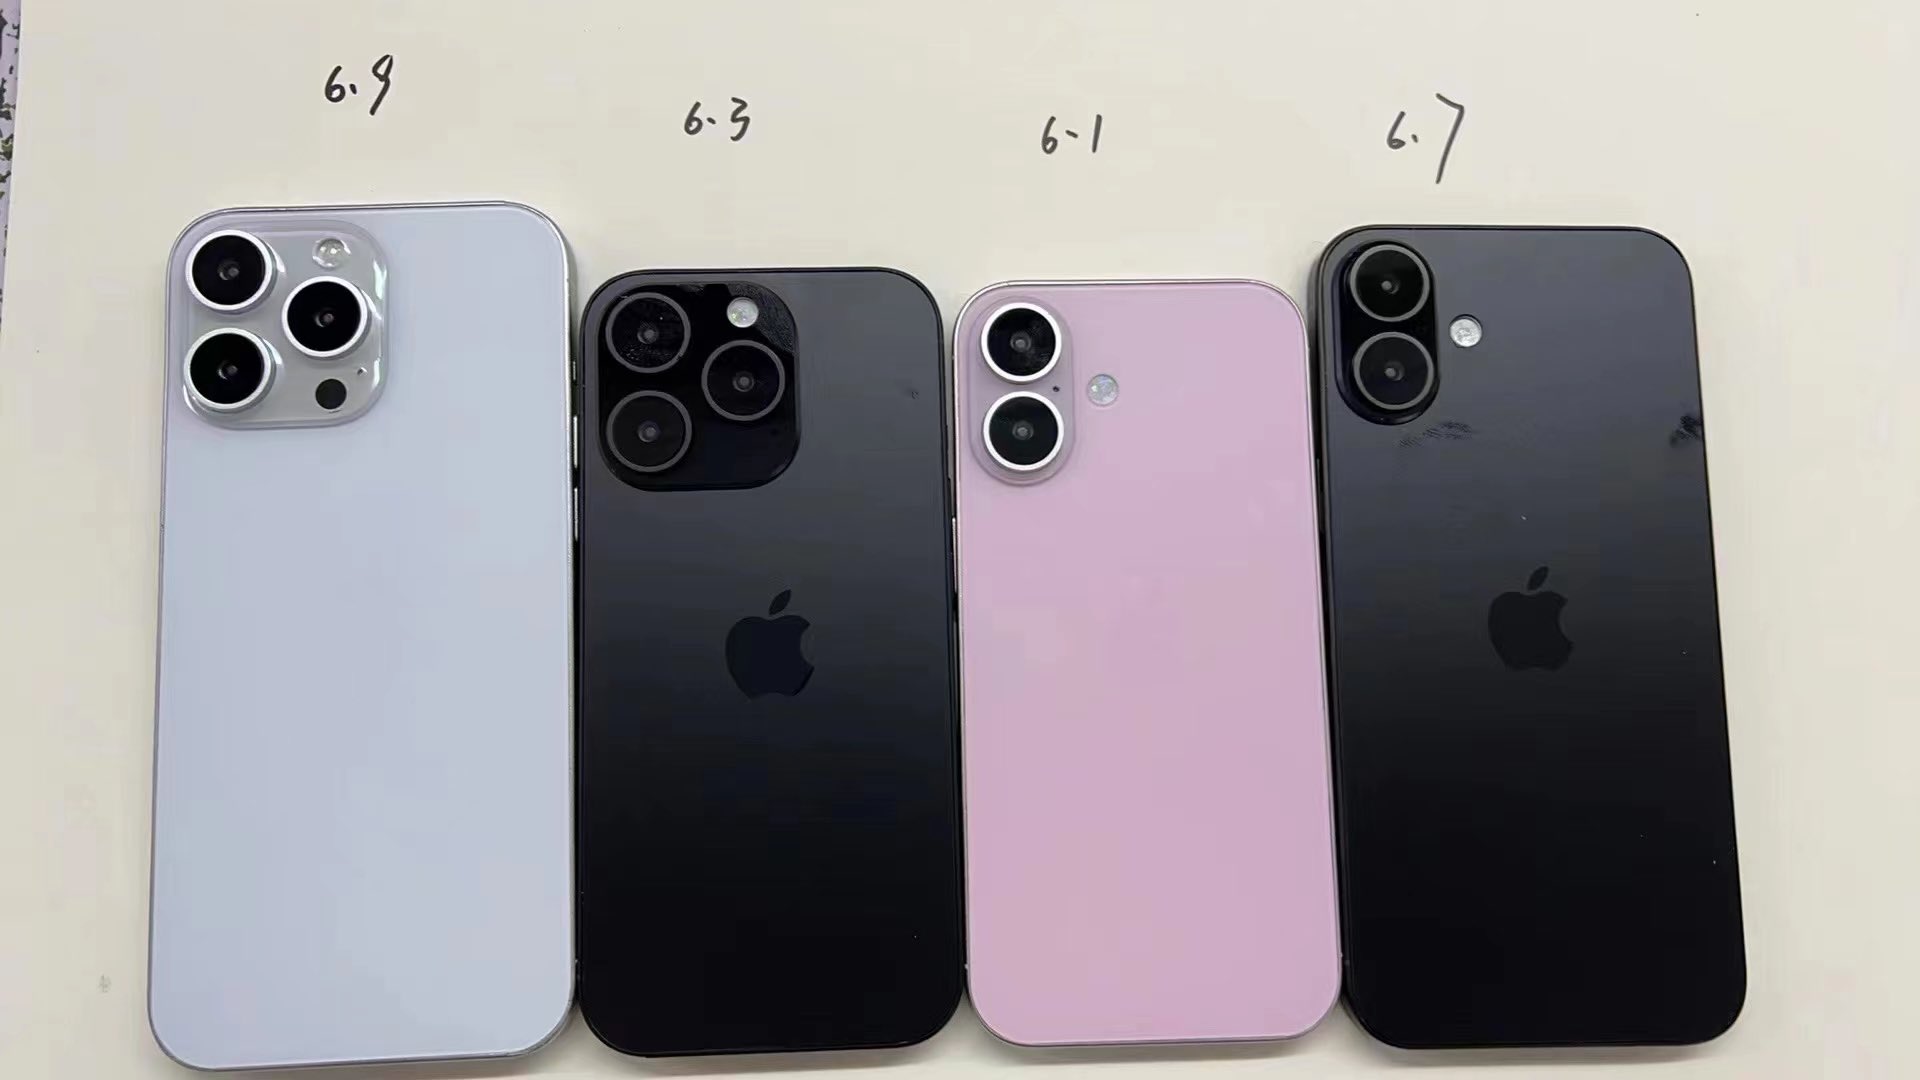 ארבע בובות של אייפון 16 לכאורה, שמציגות את הגדלים שלהן כתובים מעליהן.